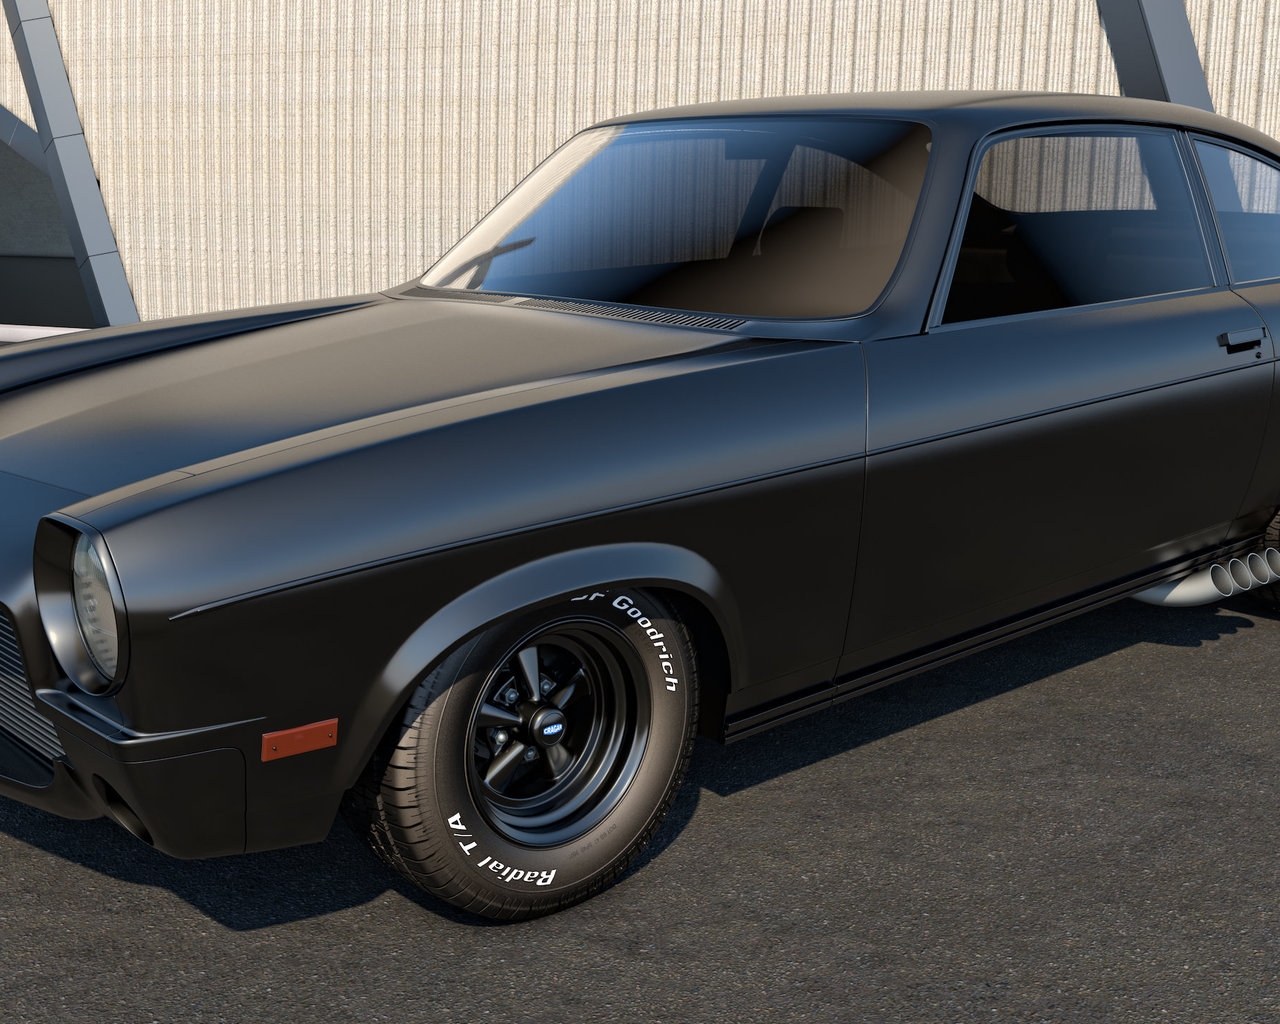 Black Chevrolet Vega for 1280 x 1024 resolution